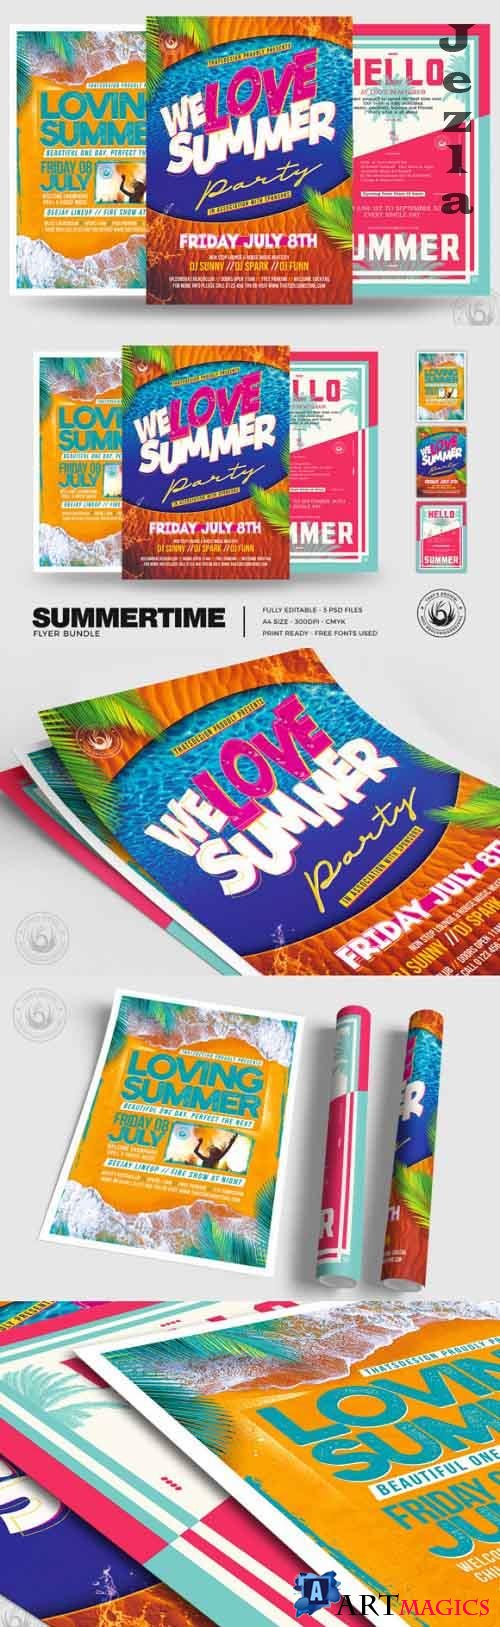 Summertime Flyer Bundle V3